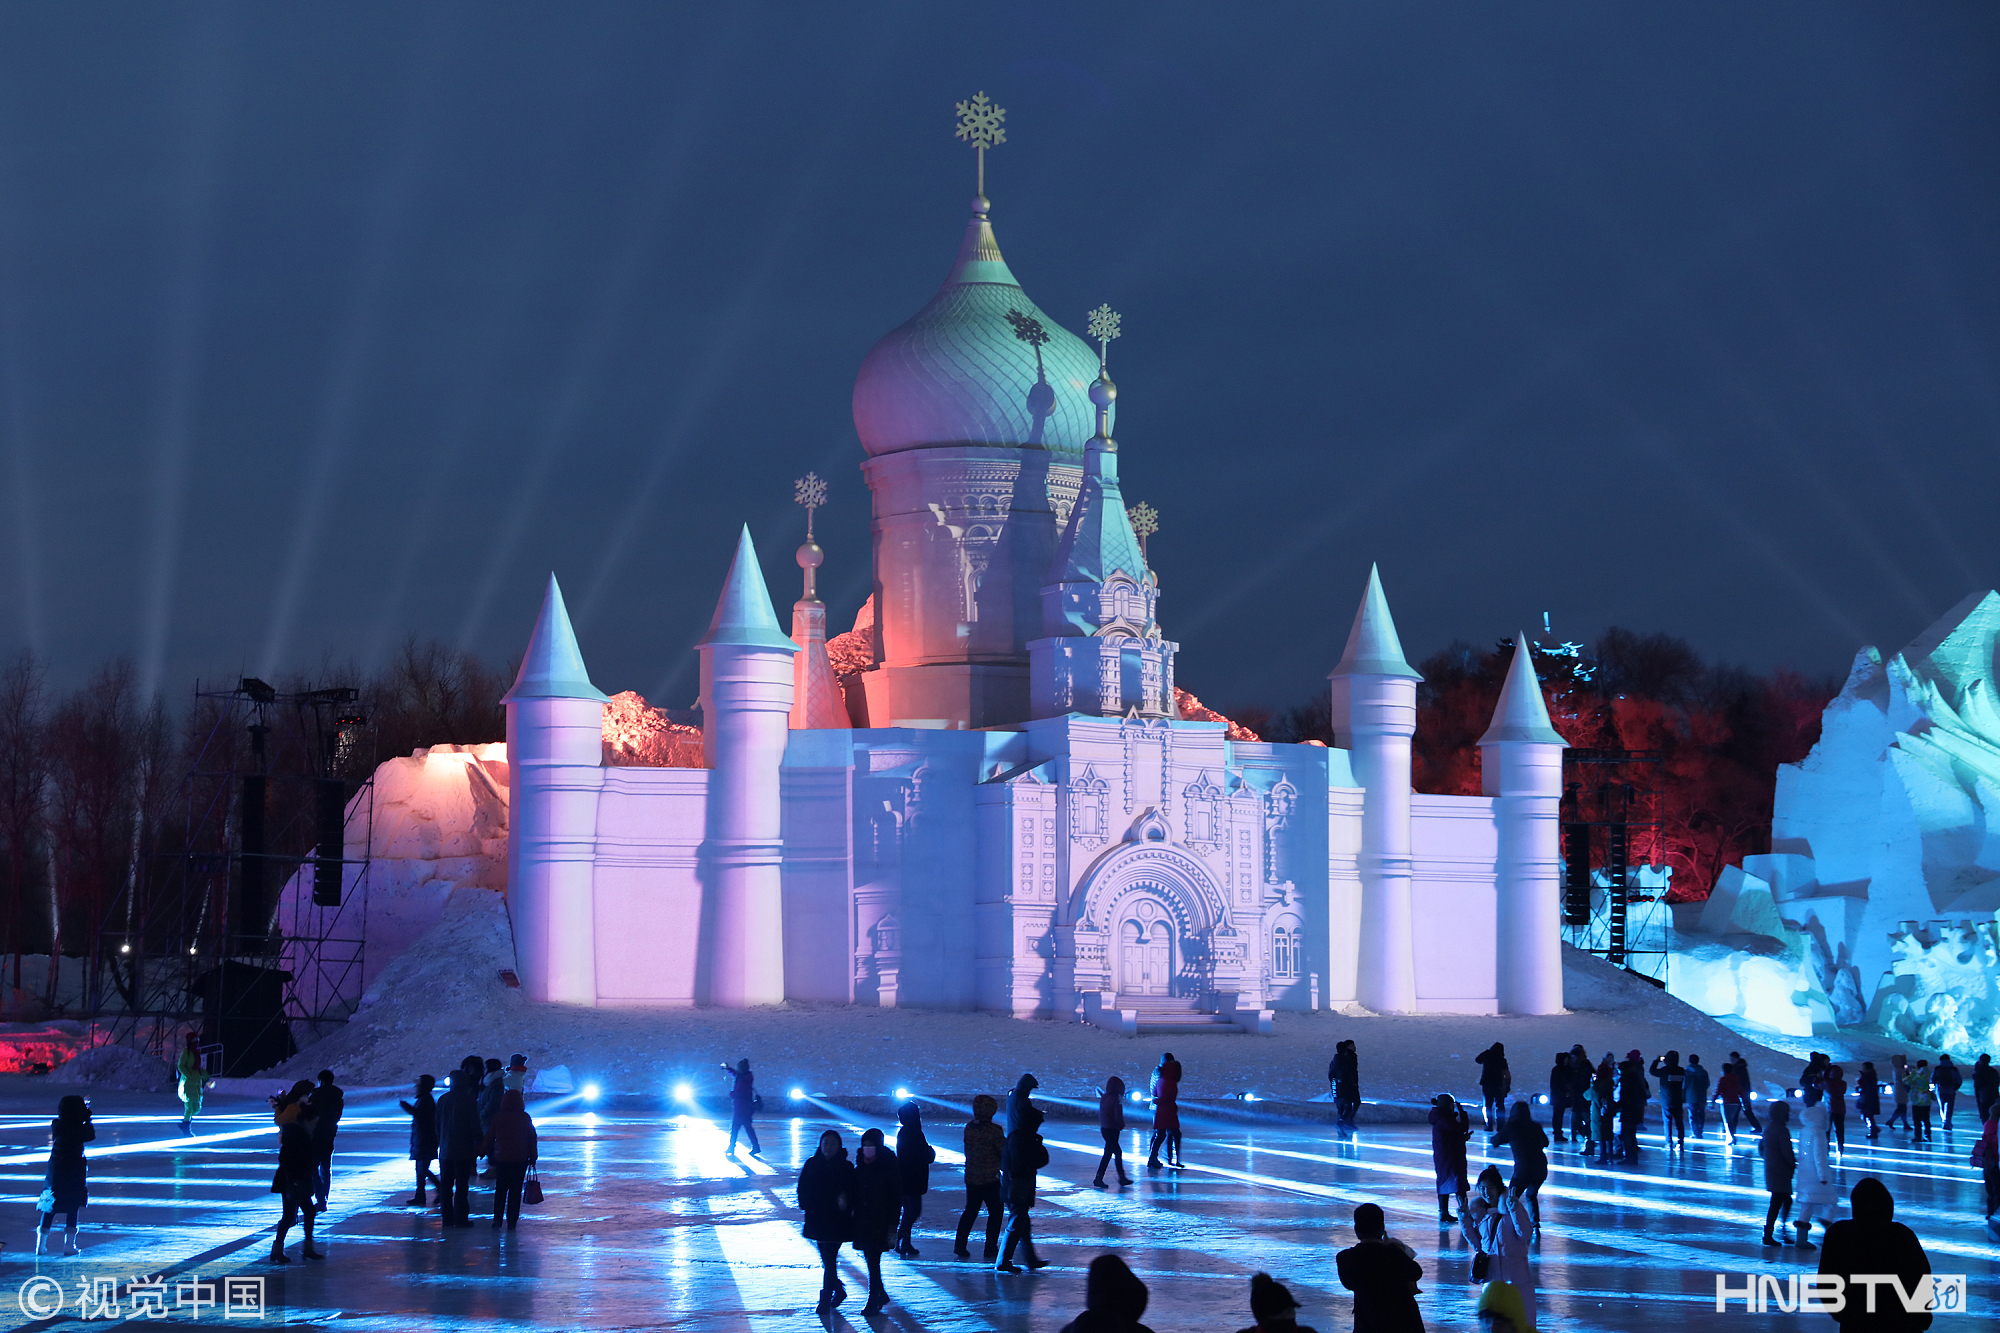 哈尔滨雪博会裸眼3D灯光秀 打造梦幻雪城堡